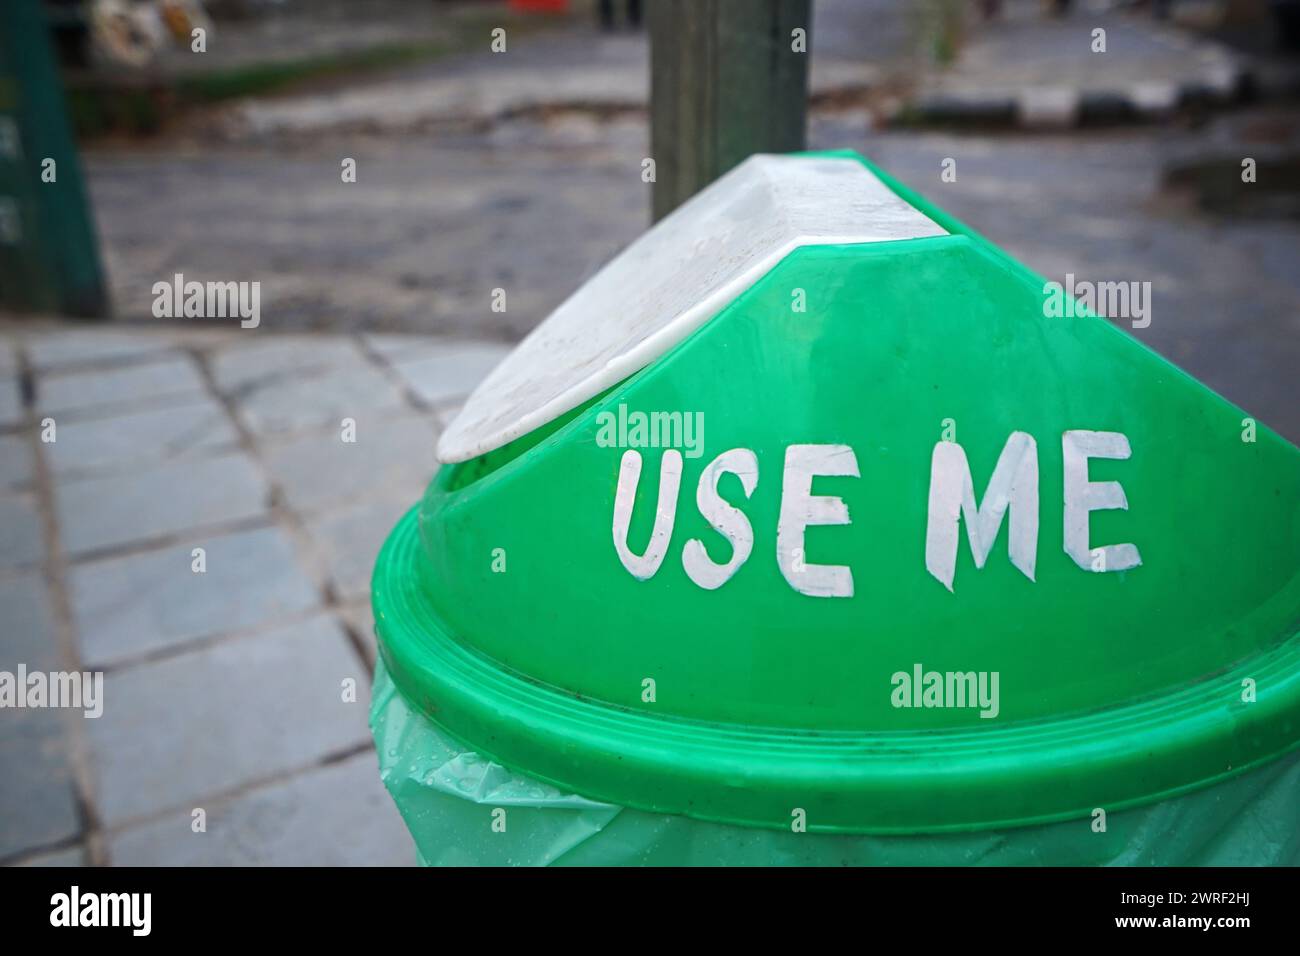 Gros plan sur la poubelle en plastique vert avec le texte « USE ME » sur son couvercle Banque D'Images